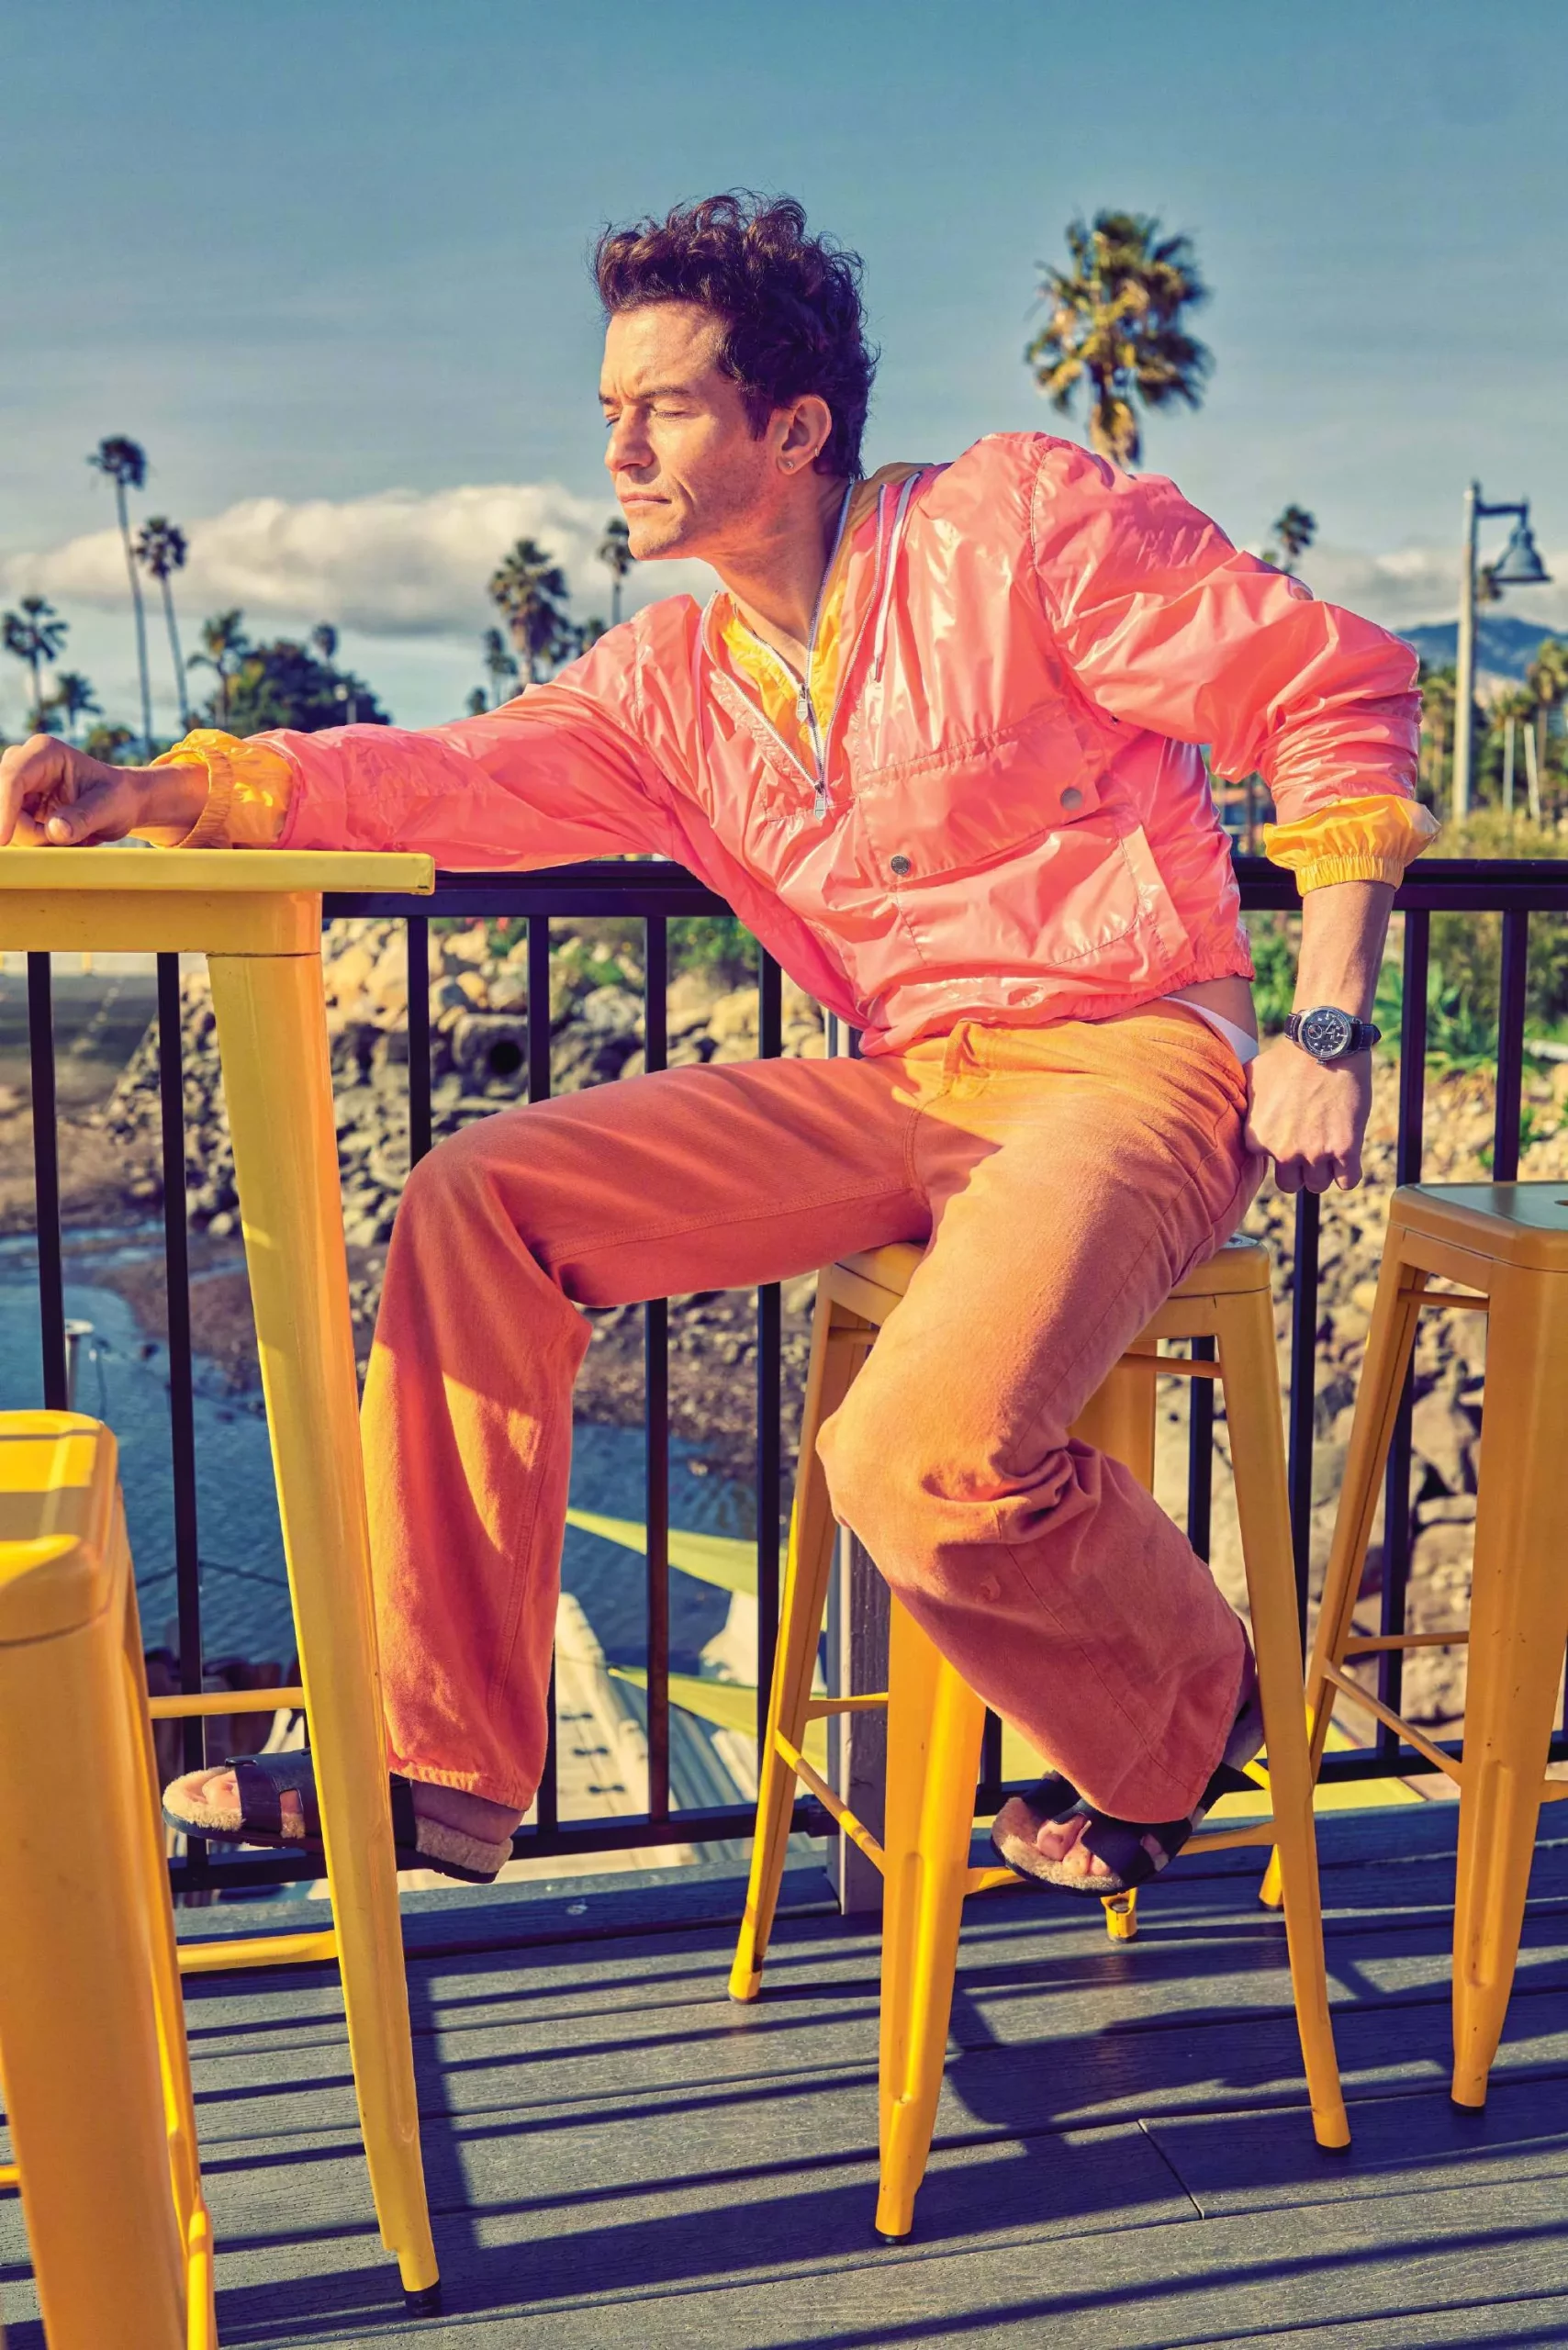 Orlando Bloom, New Photoshoot for 'Flaunt' Magazine | FMV6